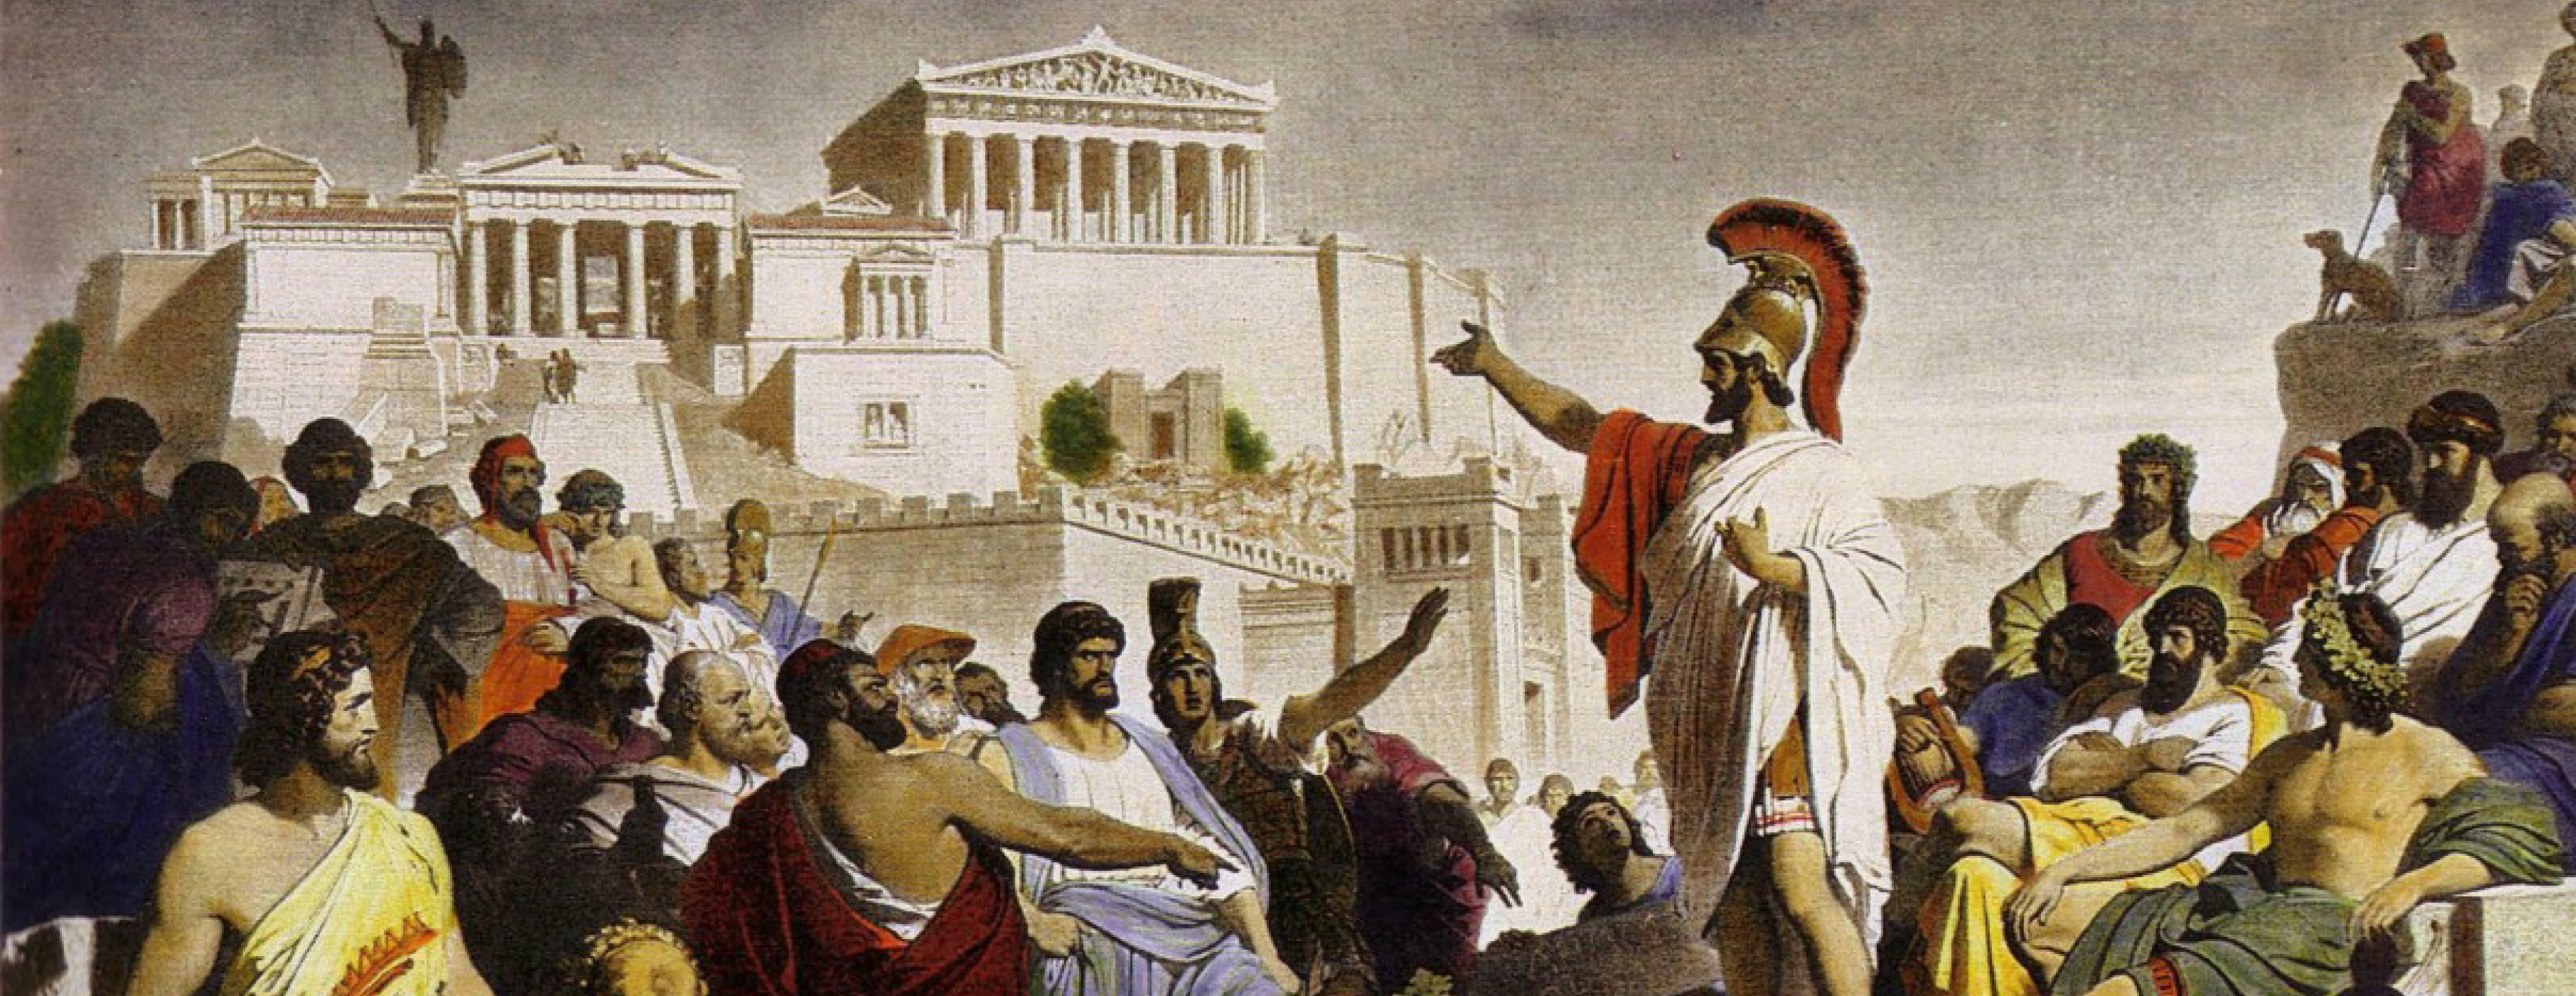 Решения народного собрания в афинах